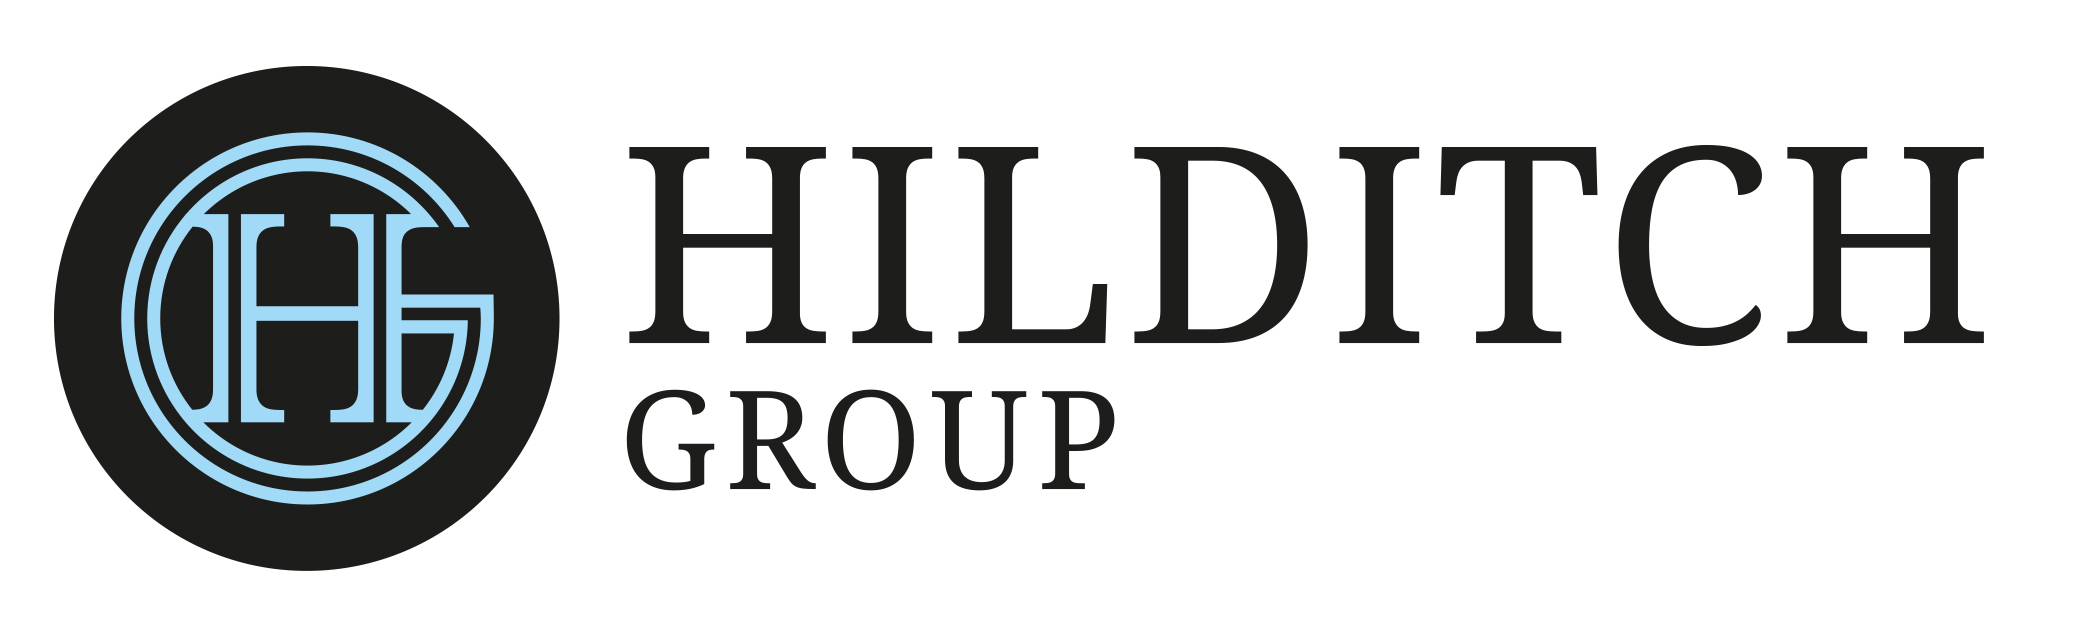 logo for Hilditch Group Ltd